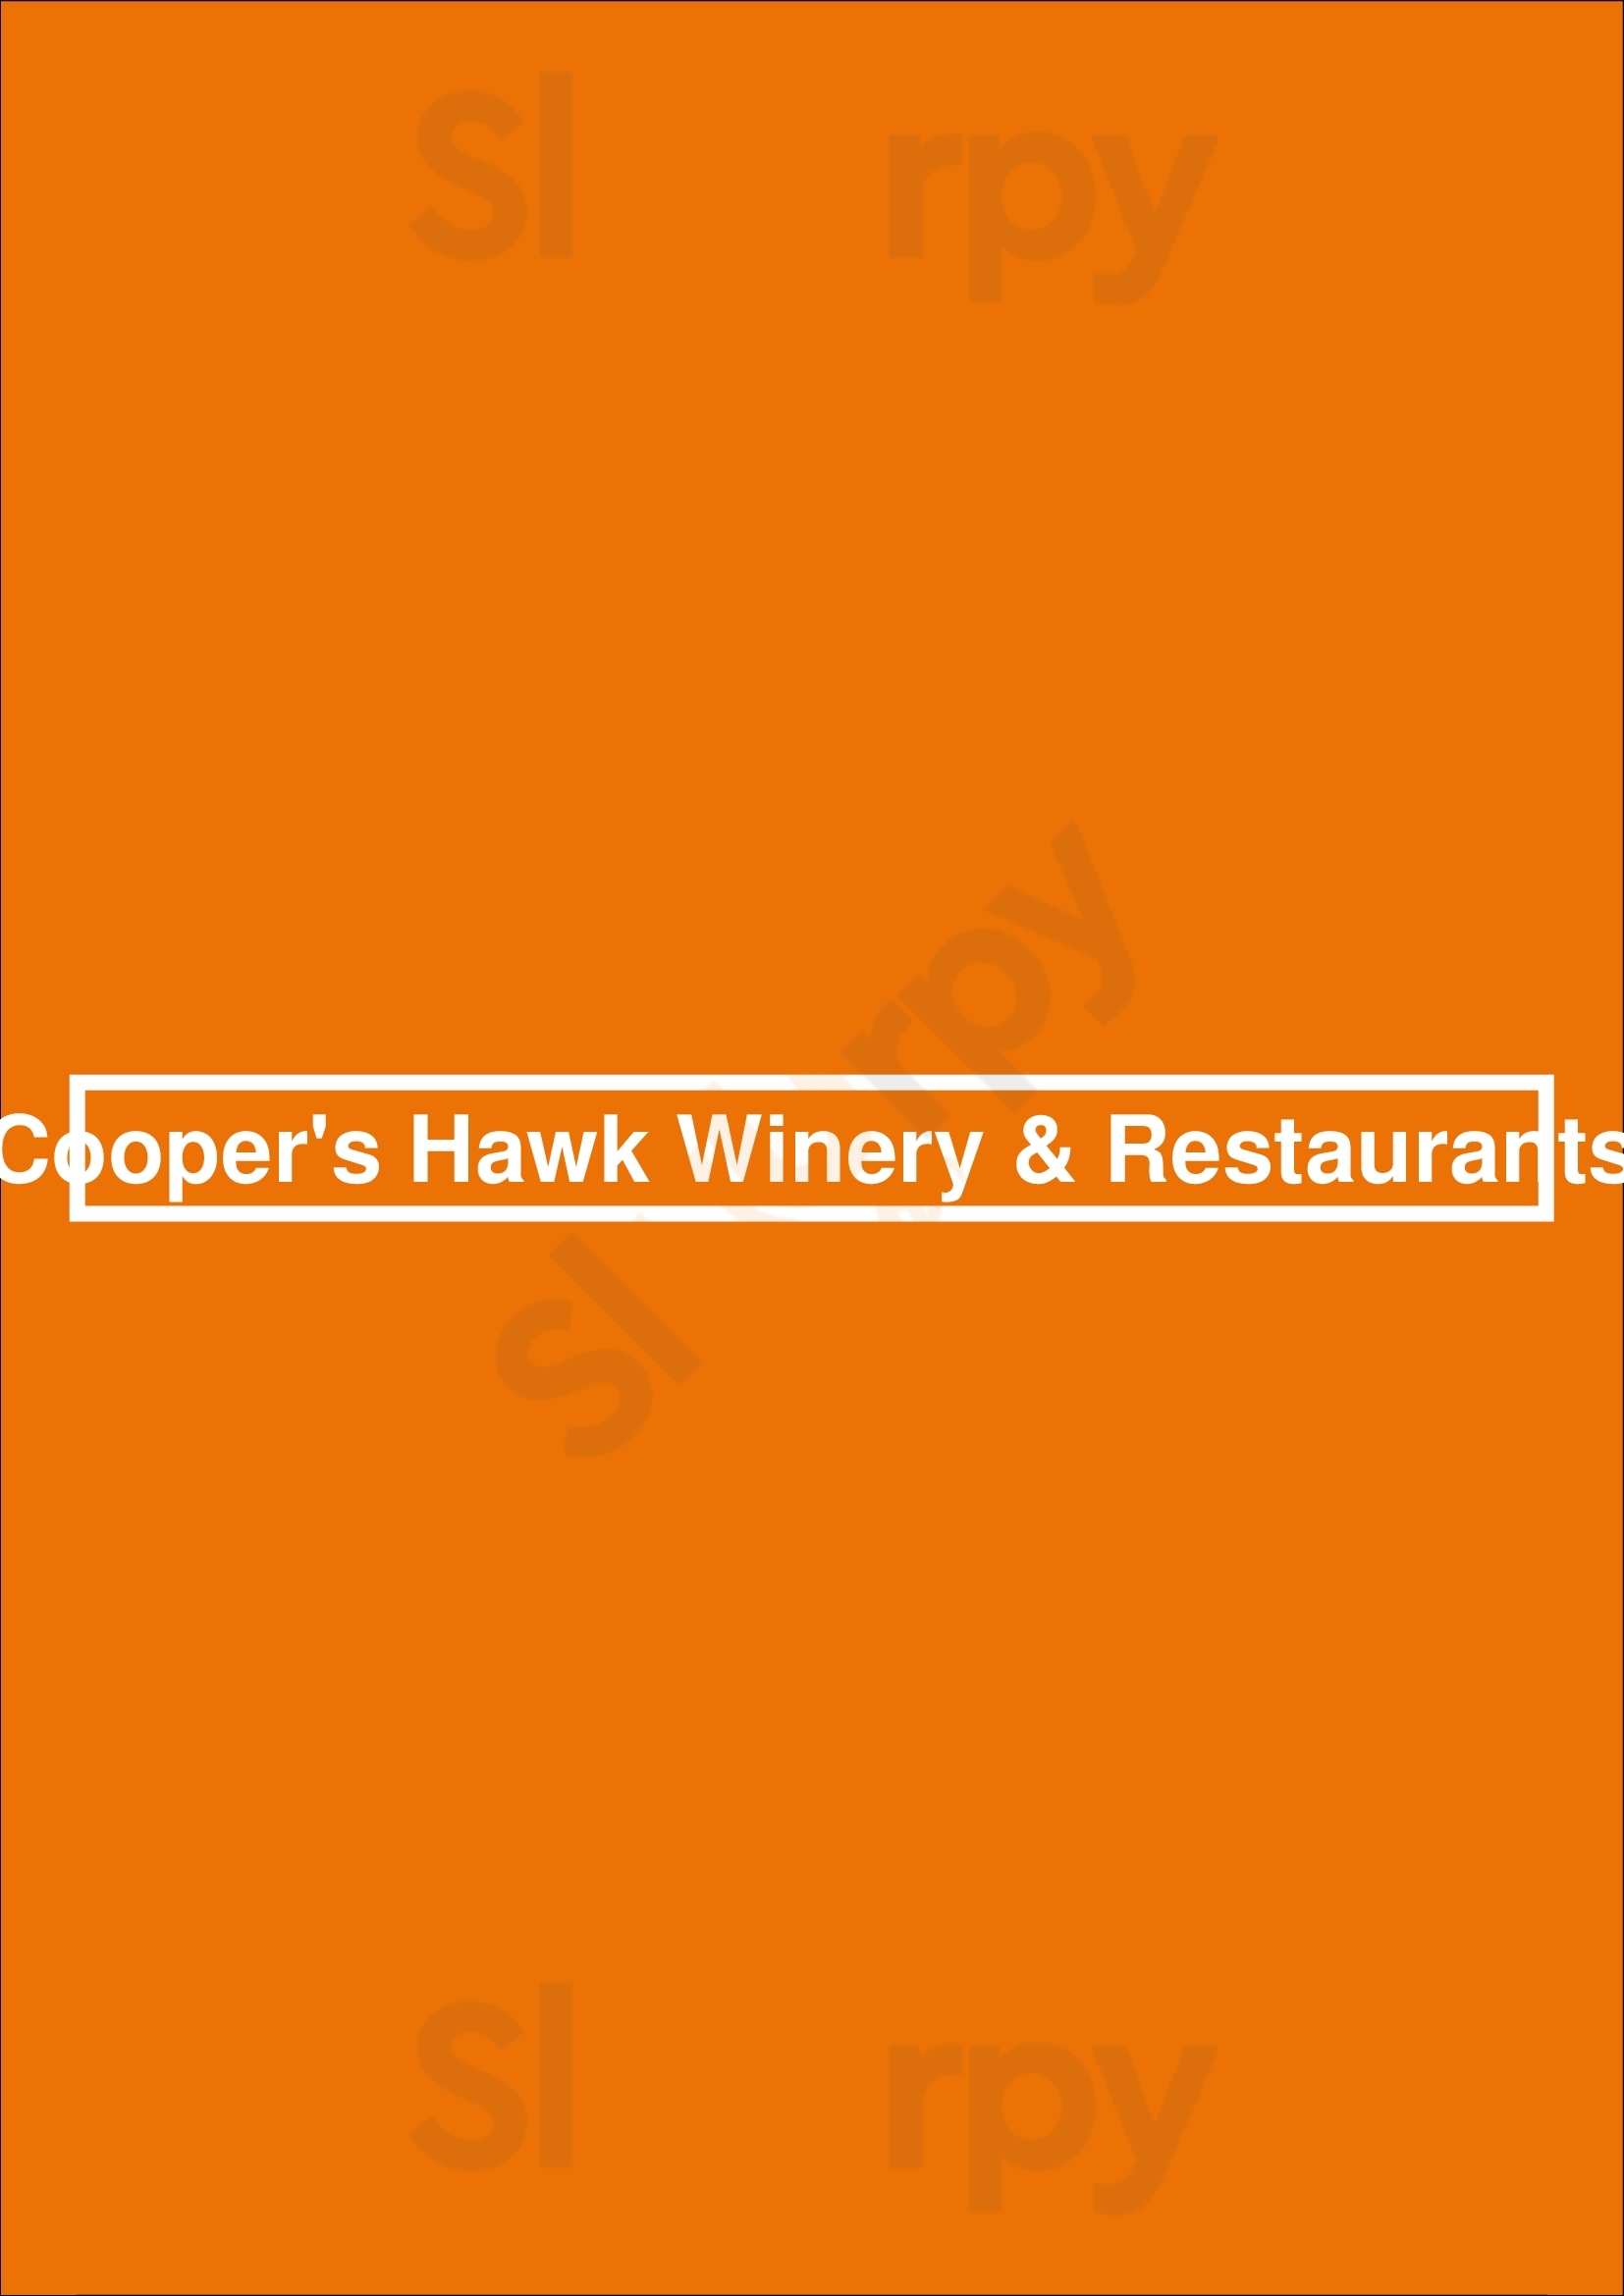 Cooper's Hawk Winery & Restaurants Naples Menu - 1